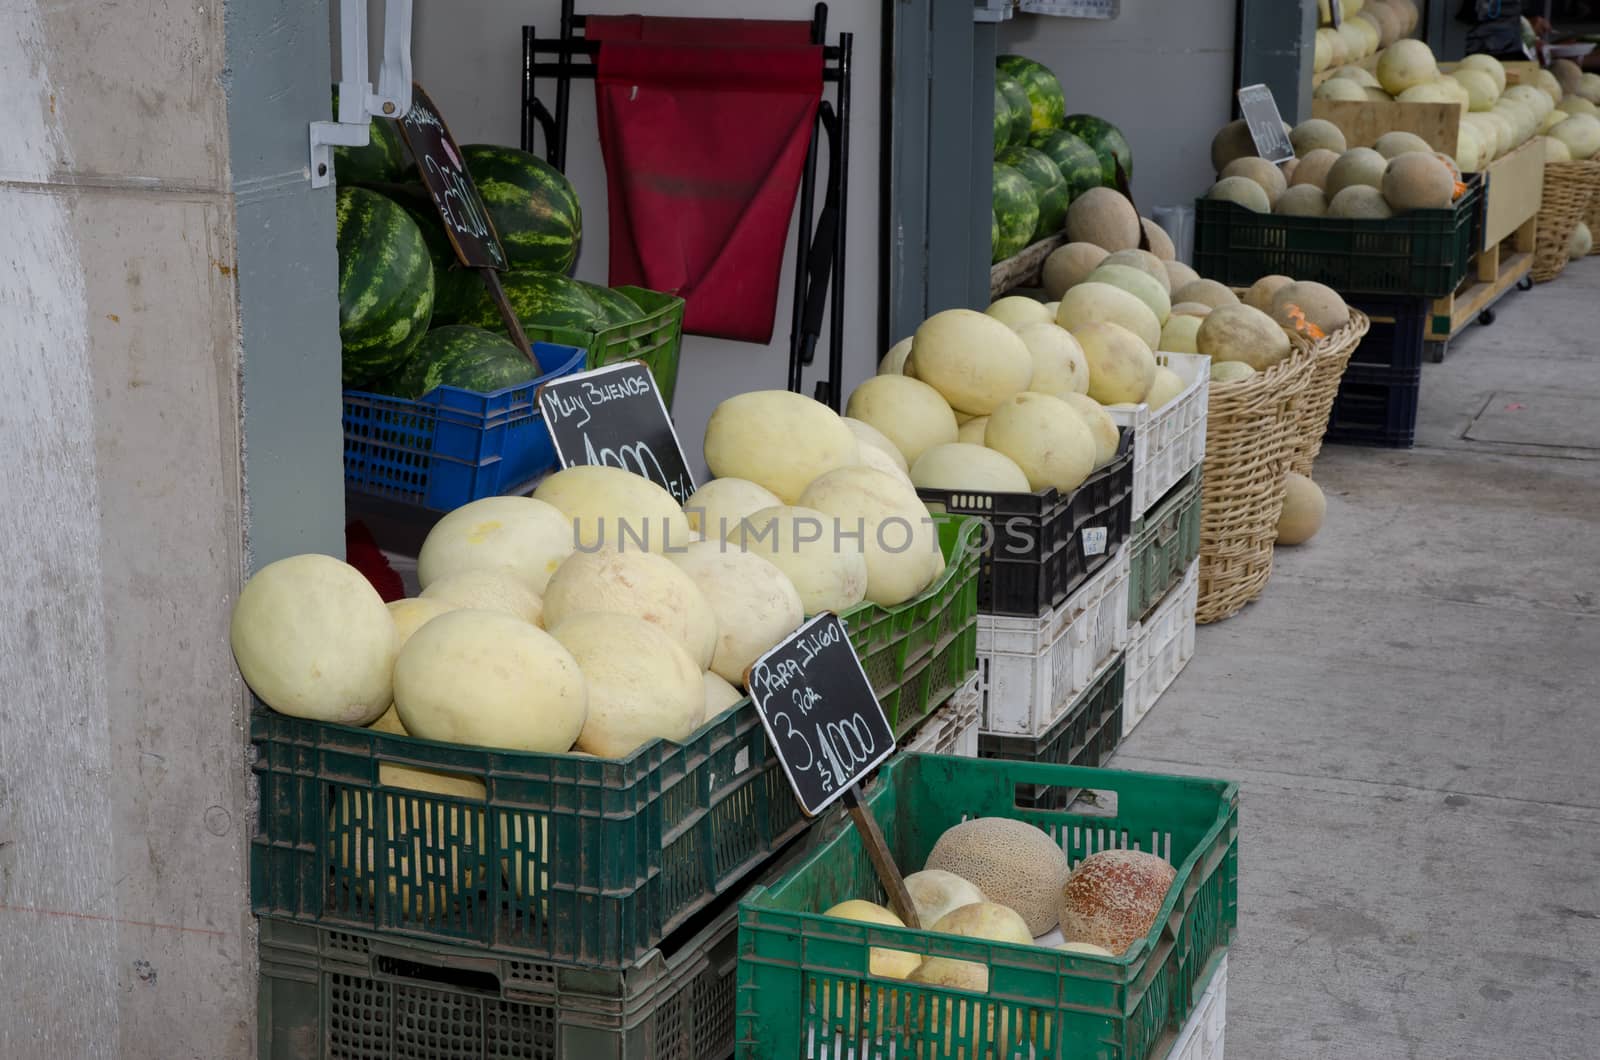 Market stalls of watermelons Citrullus lanatus in Santiago de Chile. by VictorSuarez